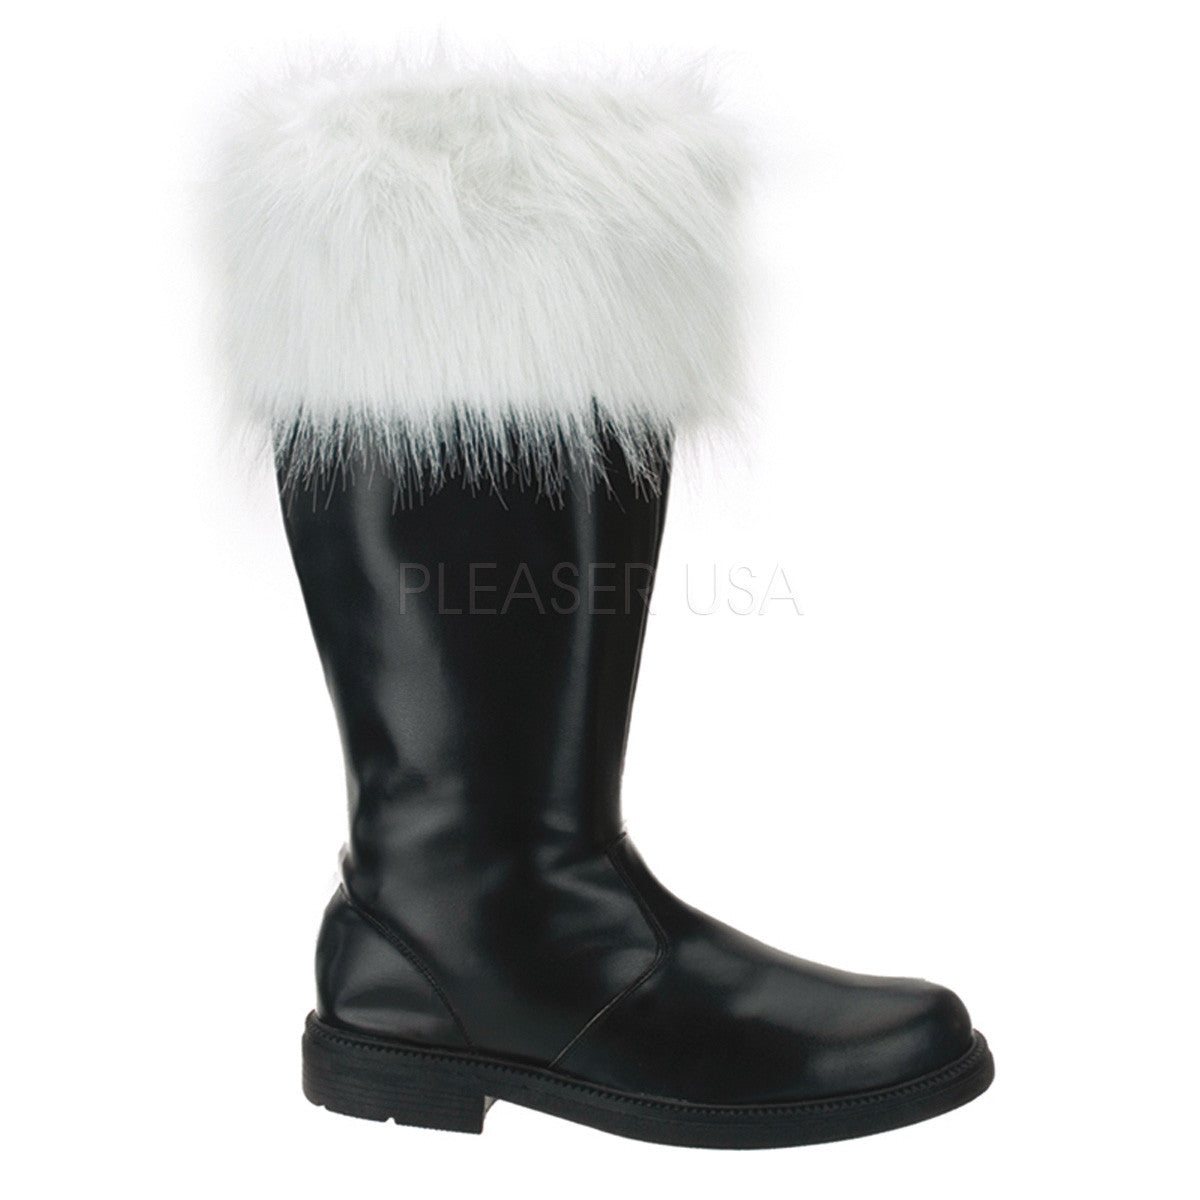 Men's Black Pu-White Faux Fur Santa Boots - Shoecup.com